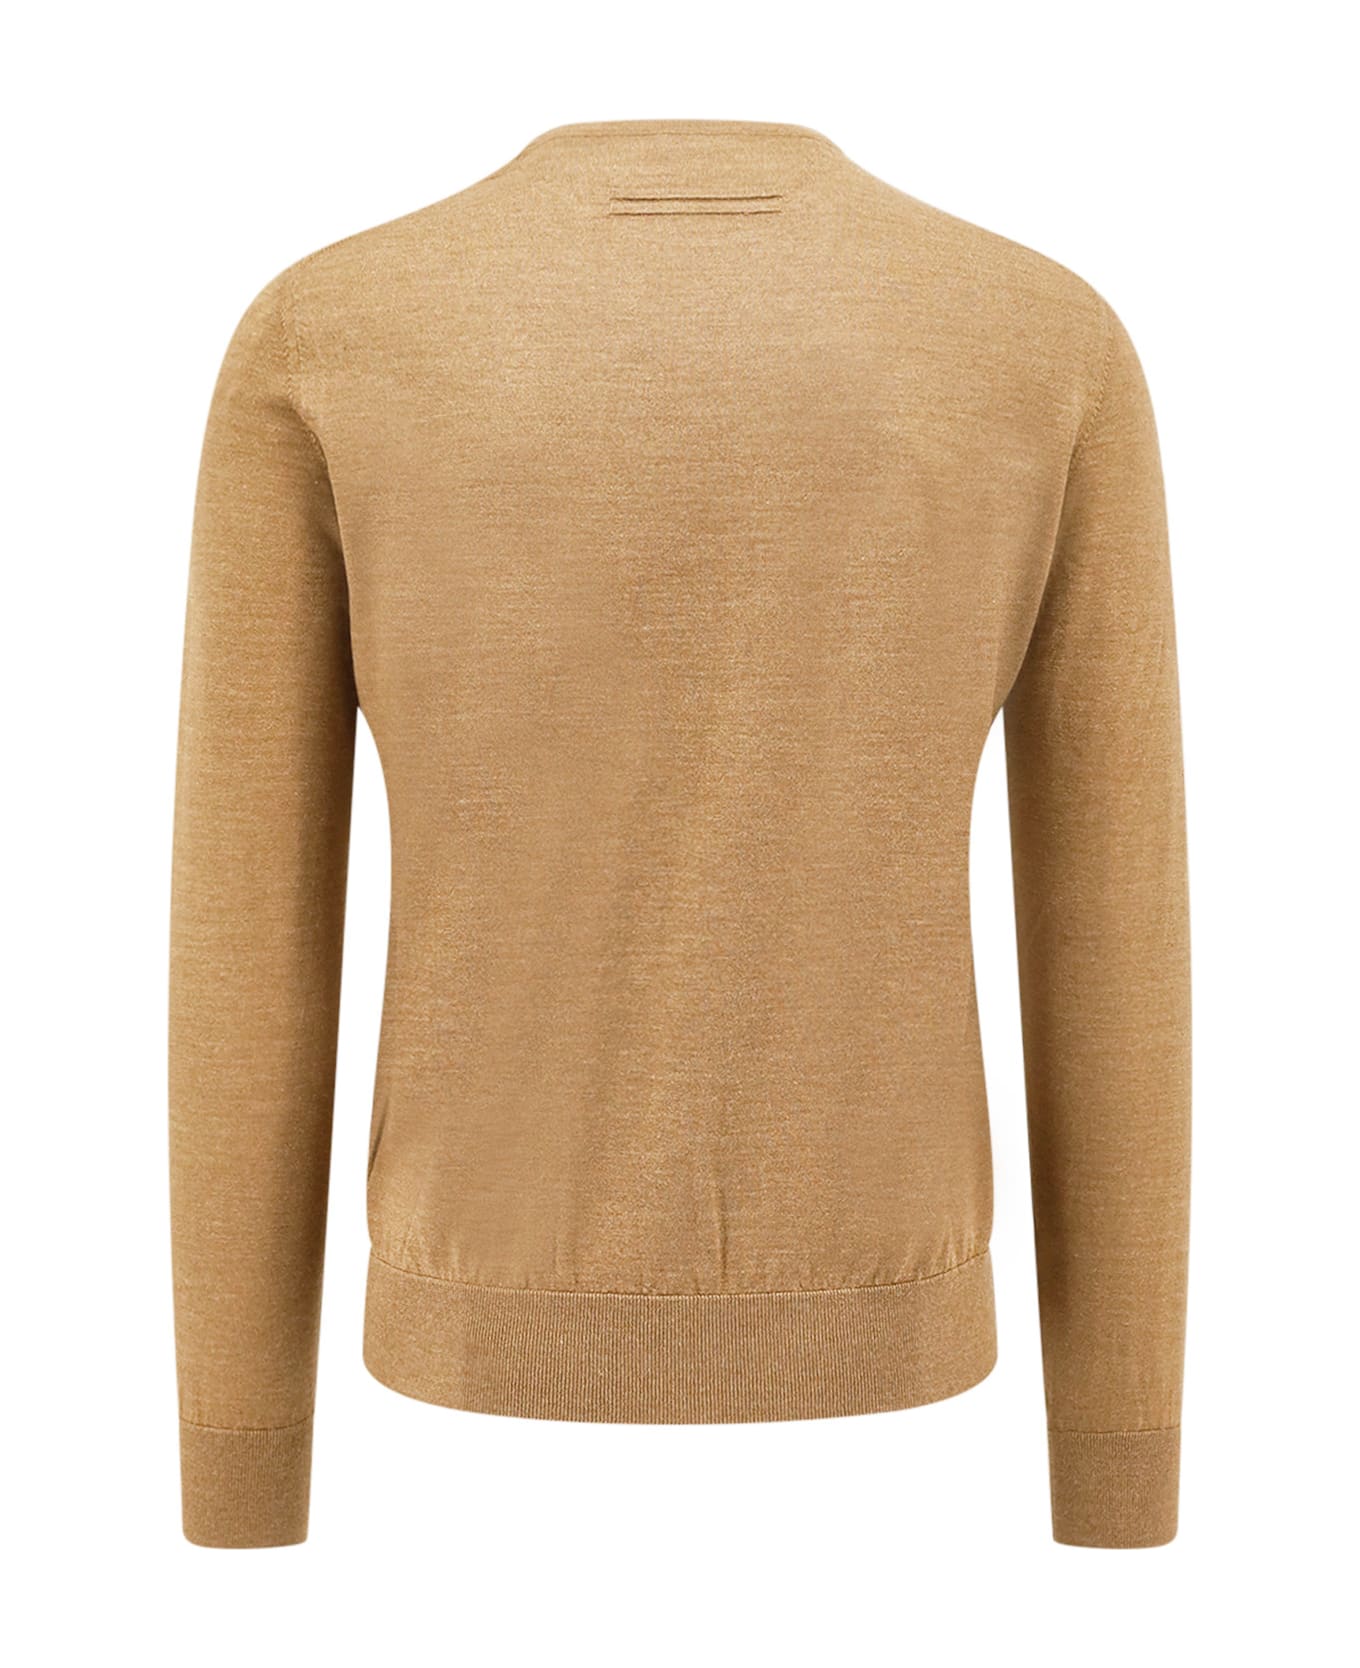 Zegna Sweater - Brown ニットウェア